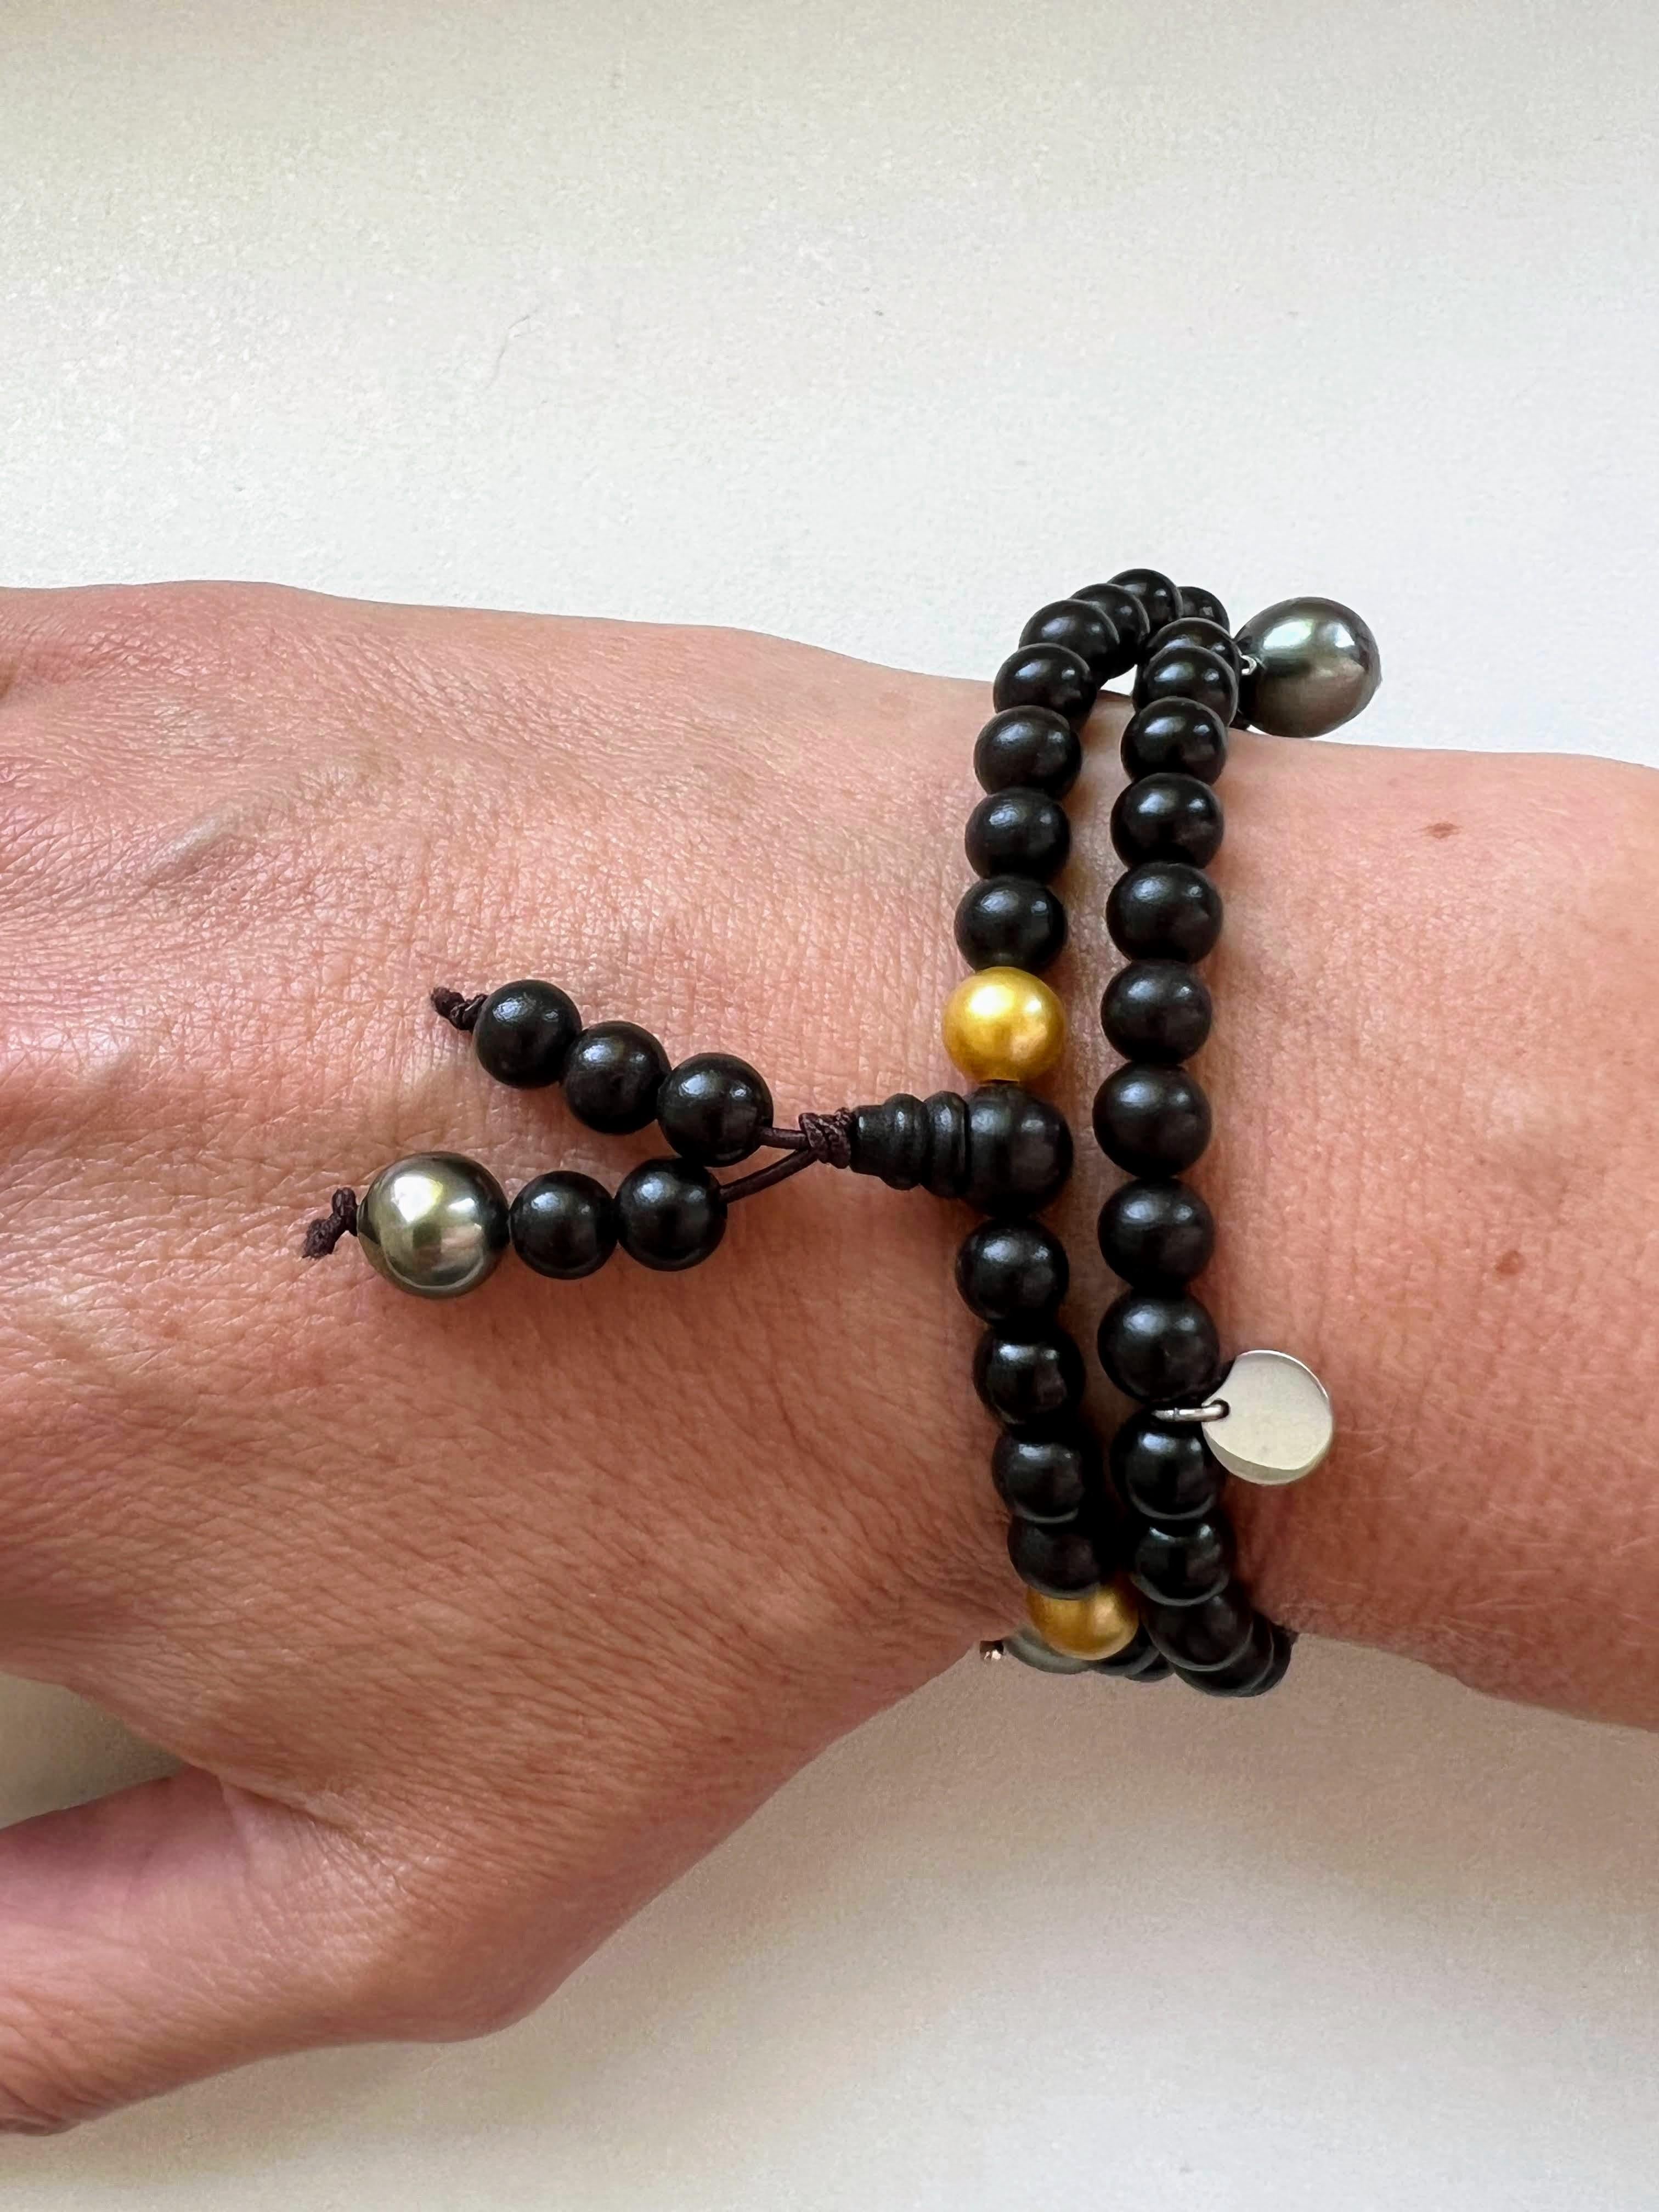 Ce bijou s'inspire des bracelets de prière bouddhistes. Il peut être porté comme un collier court ou enroulé autour du poignet. Il est captivant avec ses petites perles dorées intrigantes et rares. Les perles de Tahiti pendantes de forme baroque